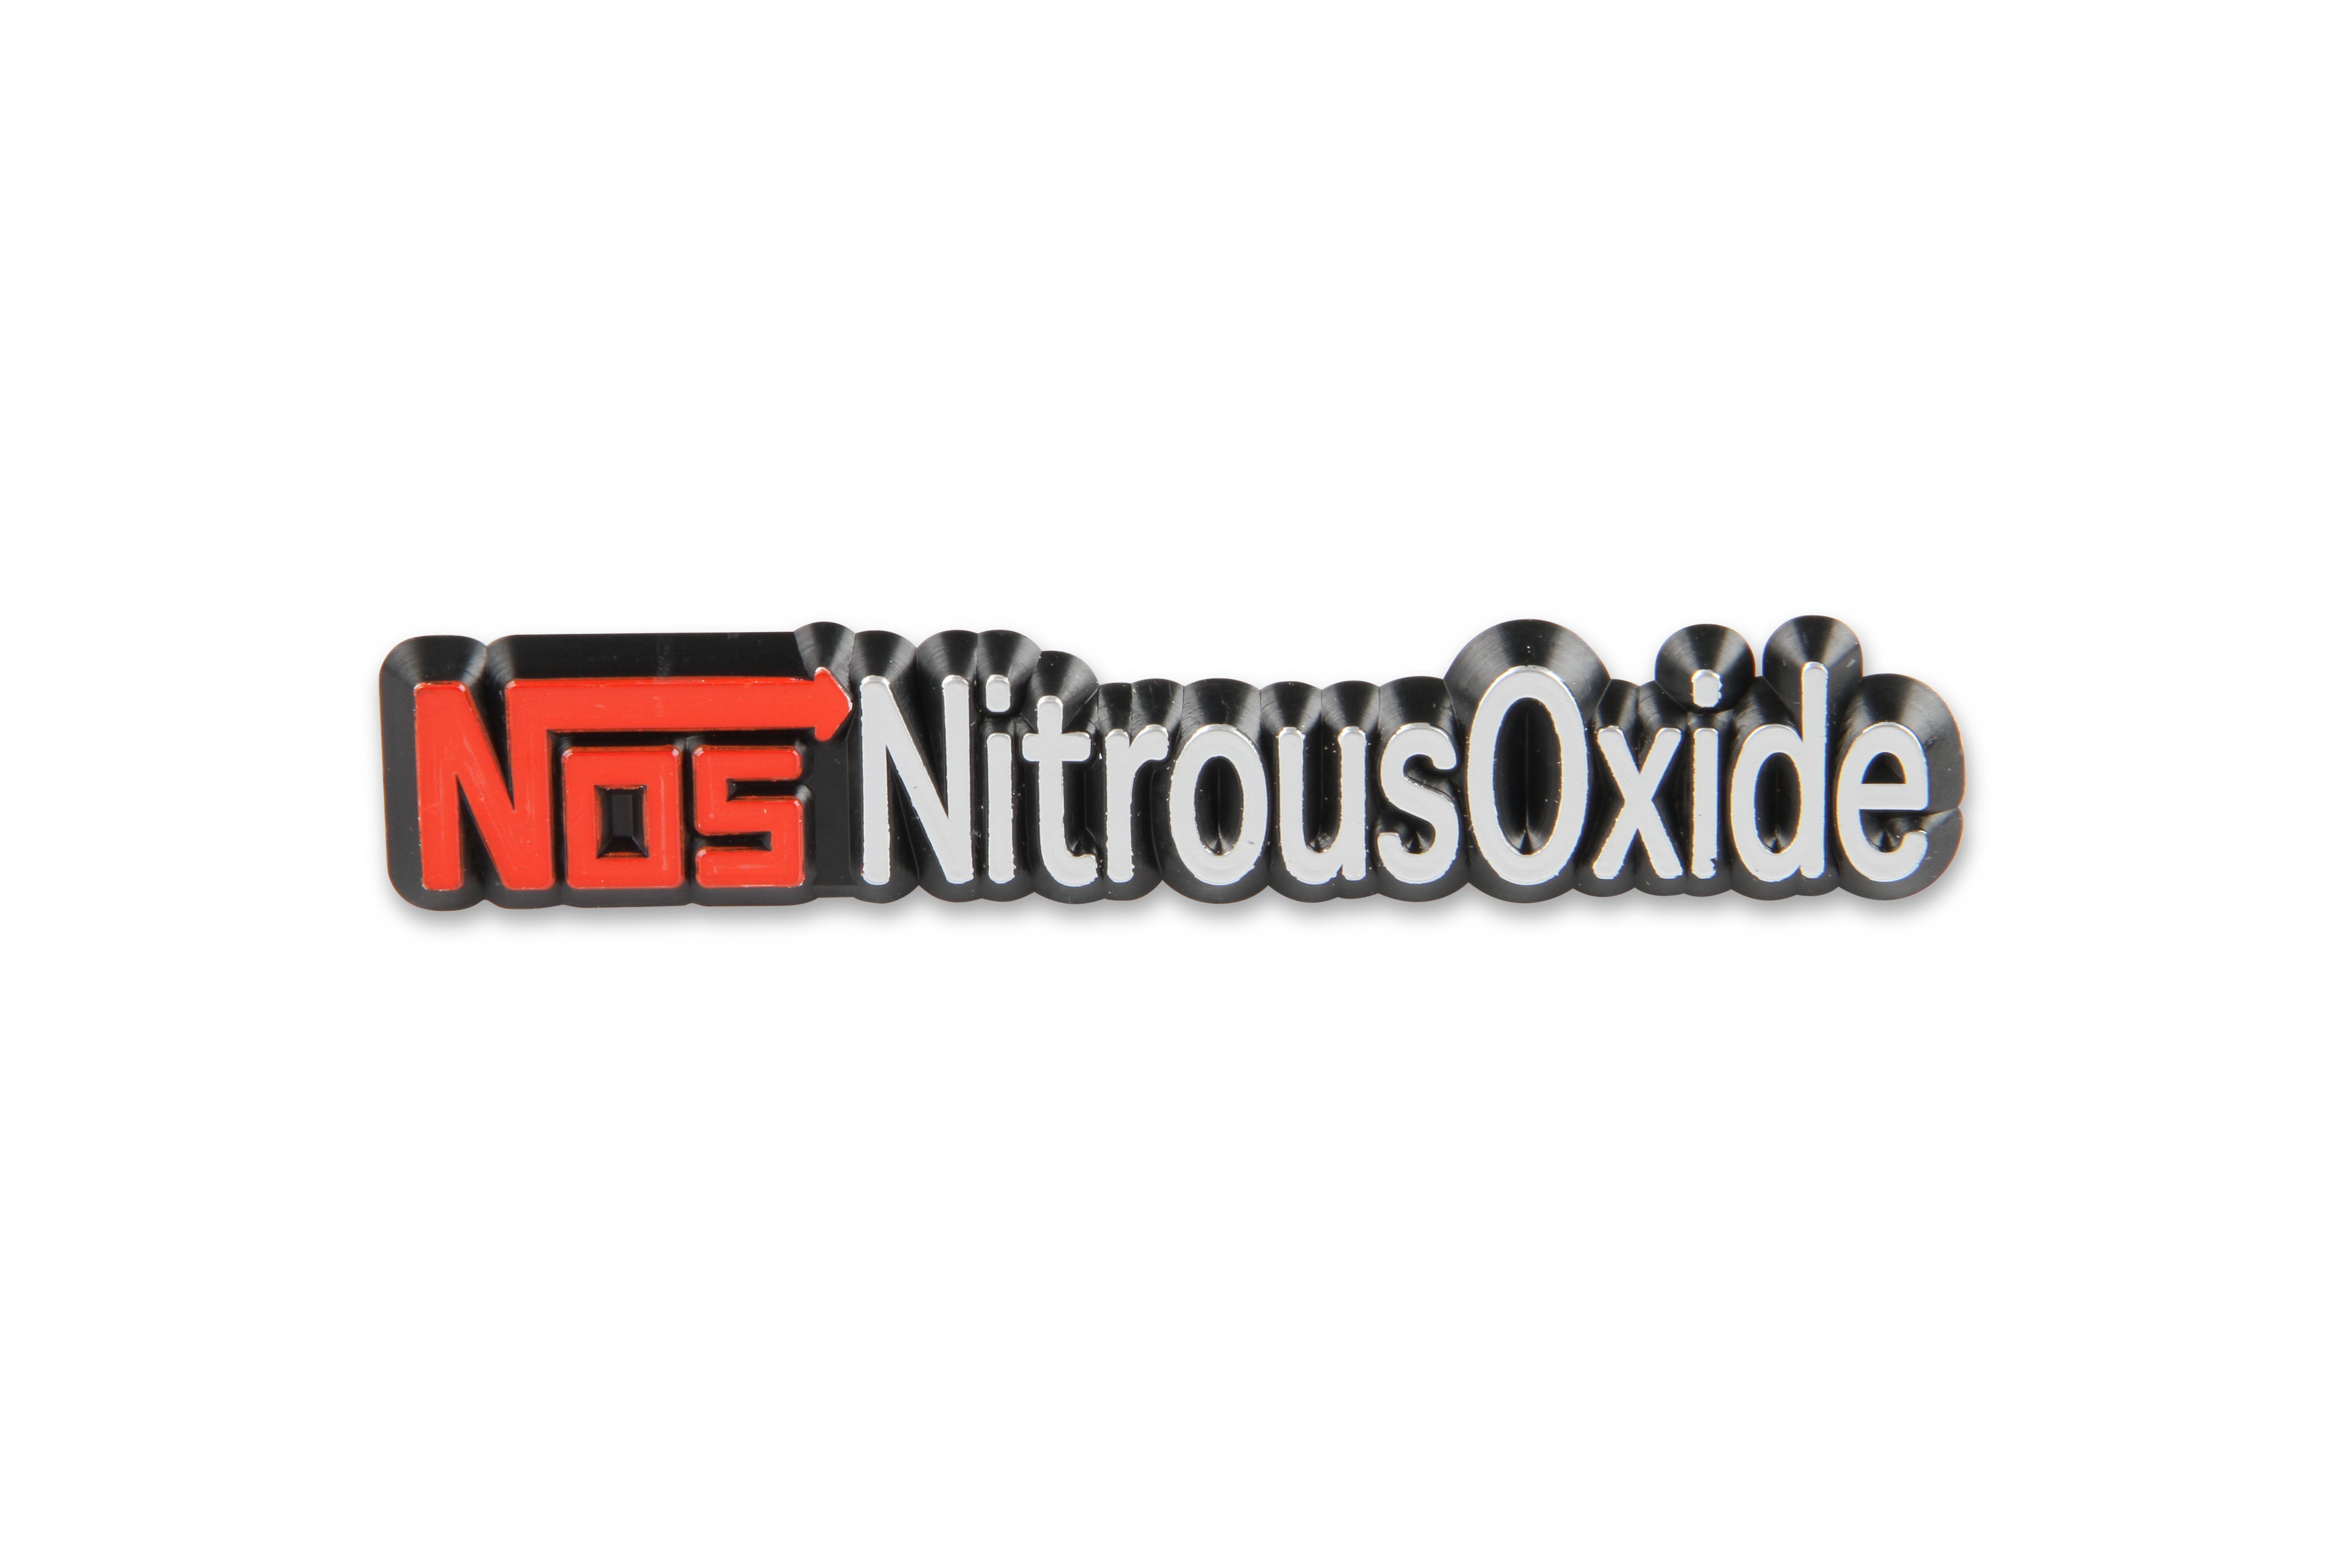 NOS/Nitrous Oxide System Exterior Decal 19151NOS